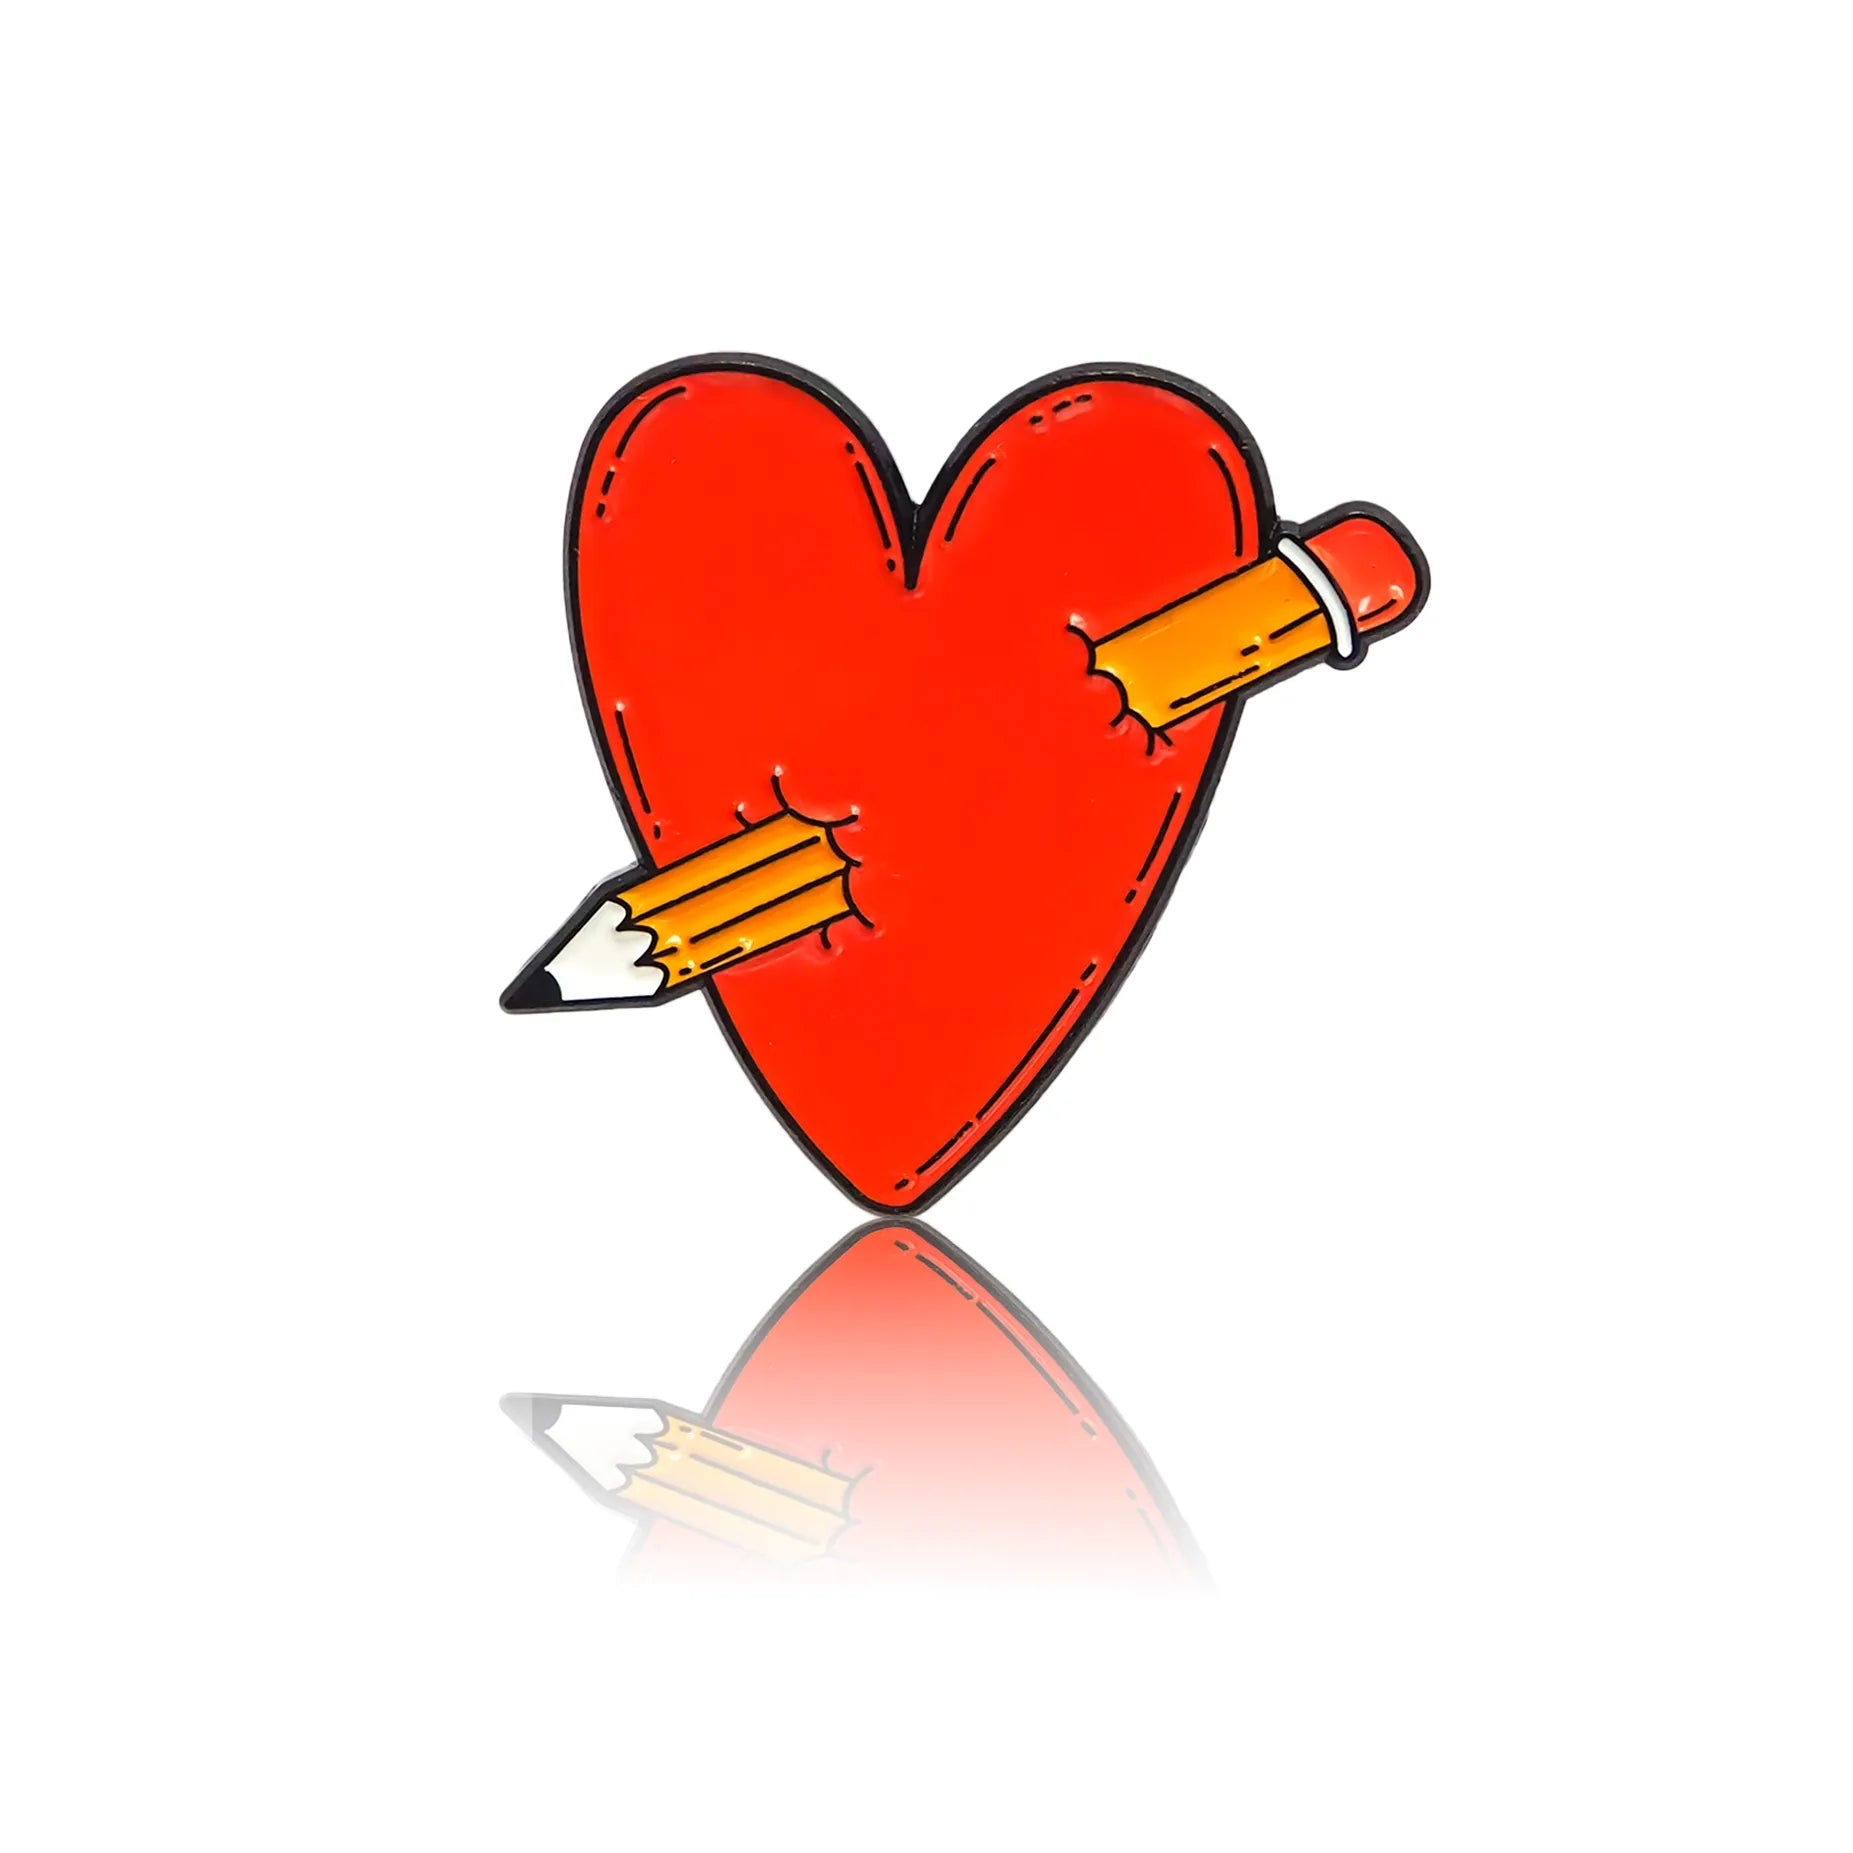 czerwone serce przebite ołówkiem